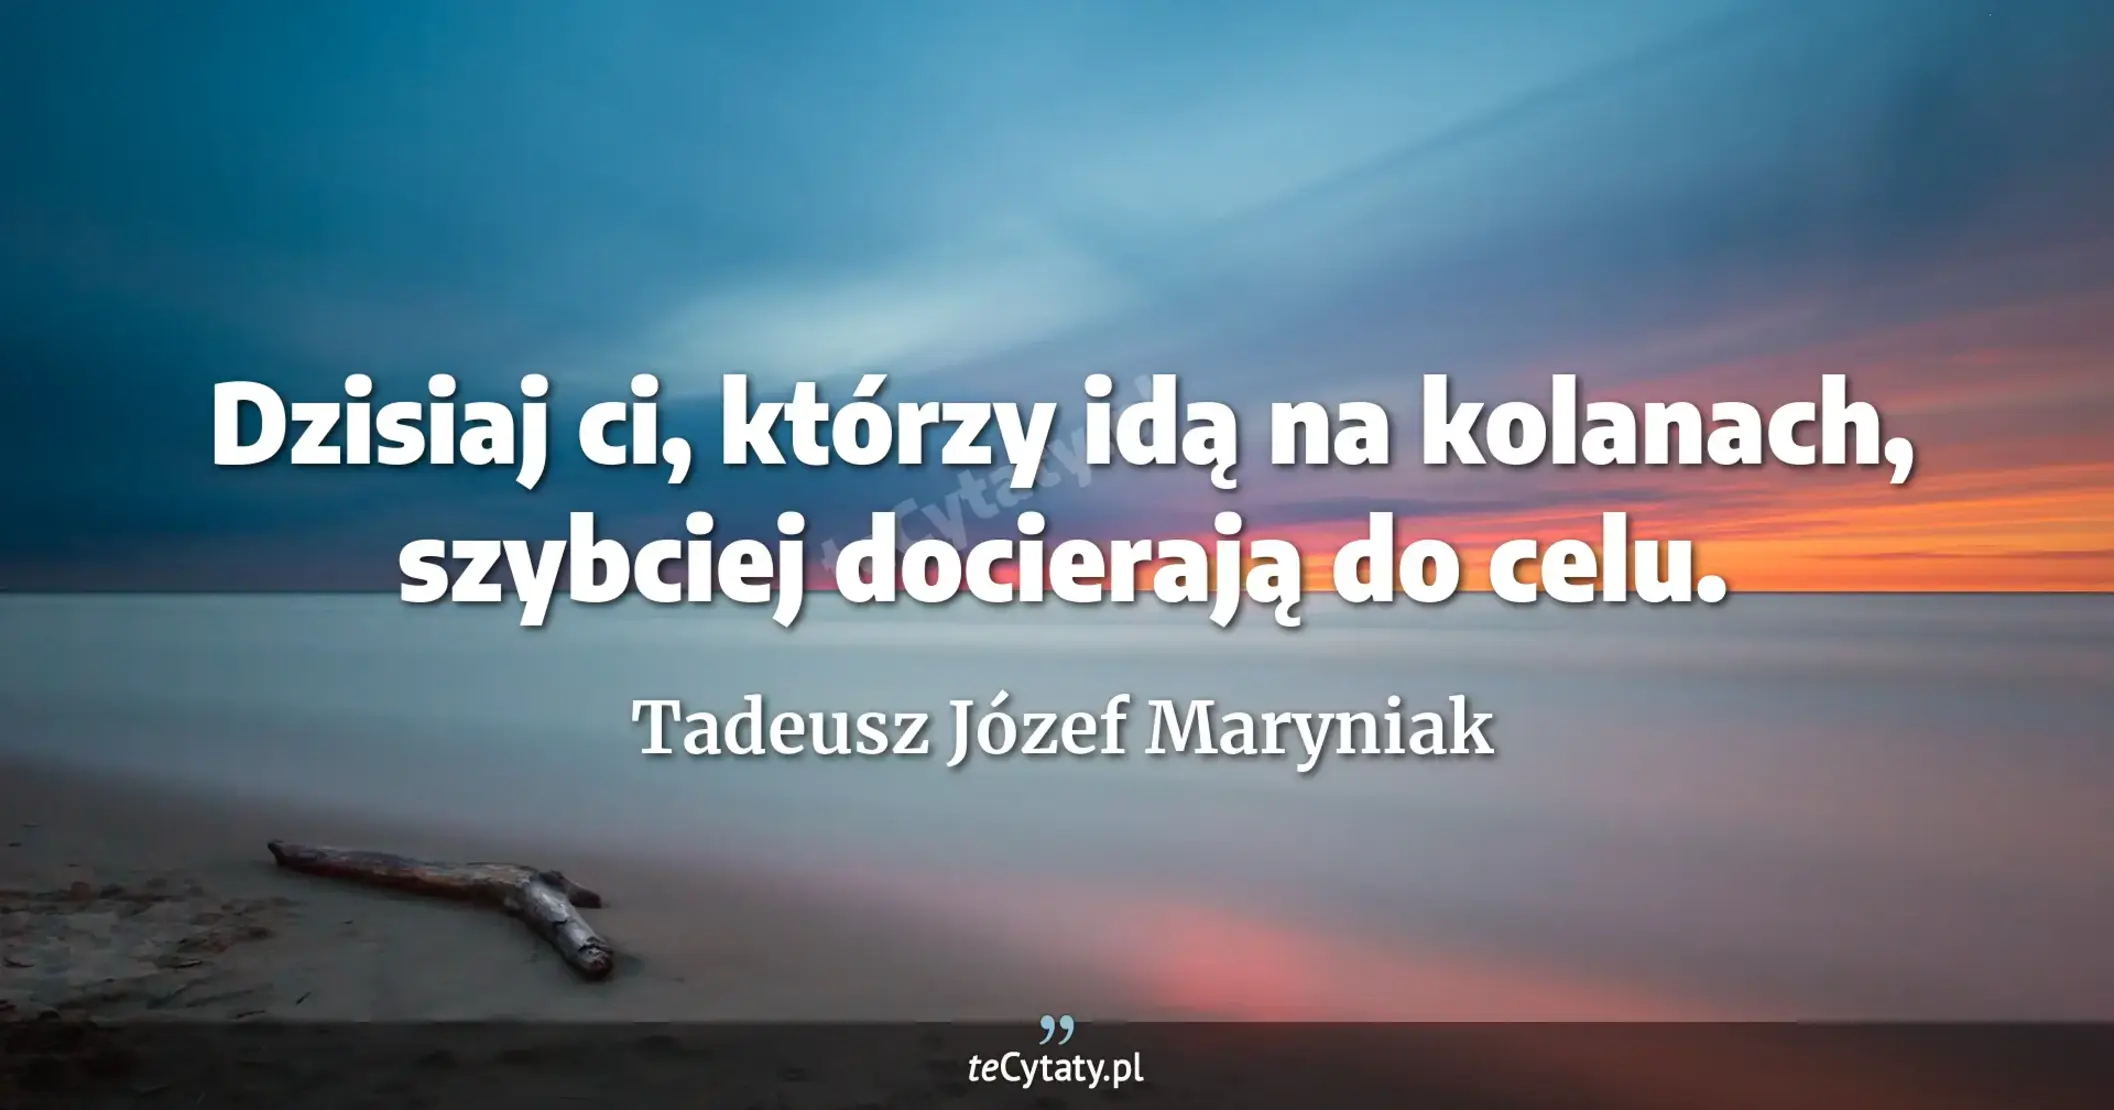 Dzisiaj ci, którzy idą na kolanach, szybciej docierają do celu. - Tadeusz Józef Maryniak